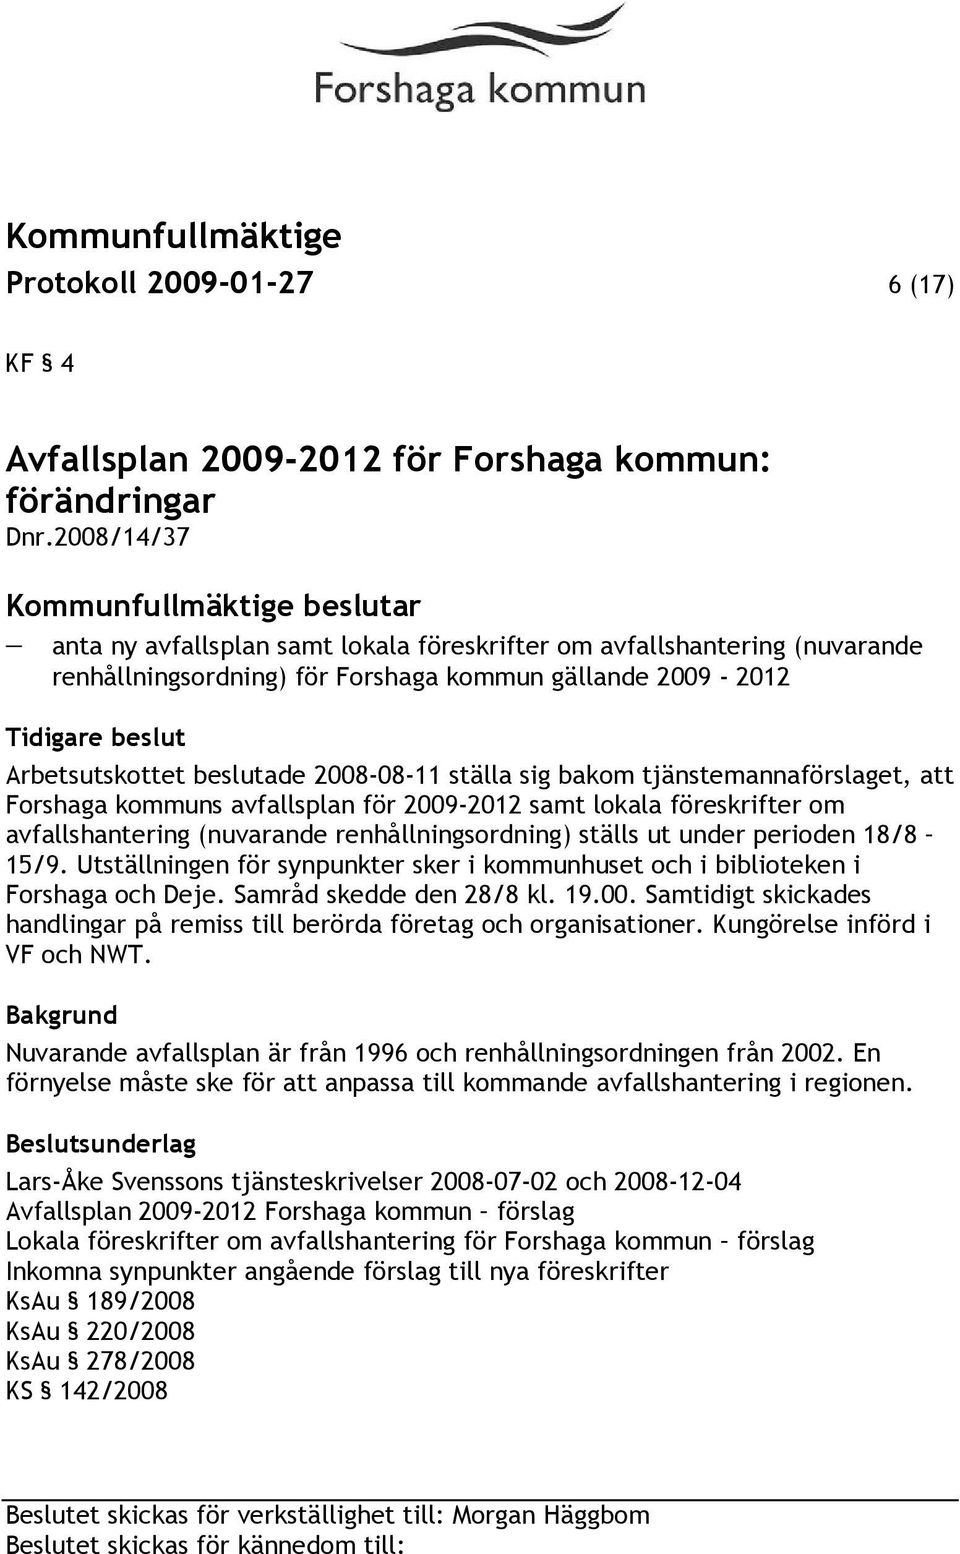 ställa sig bakom tjänstemannaförslaget, att Forshaga kommuns avfallsplan för 2009-2012 samt lokala föreskrifter om avfallshantering (nuvarande renhållningsordning) ställs ut under perioden 18/8 15/9.